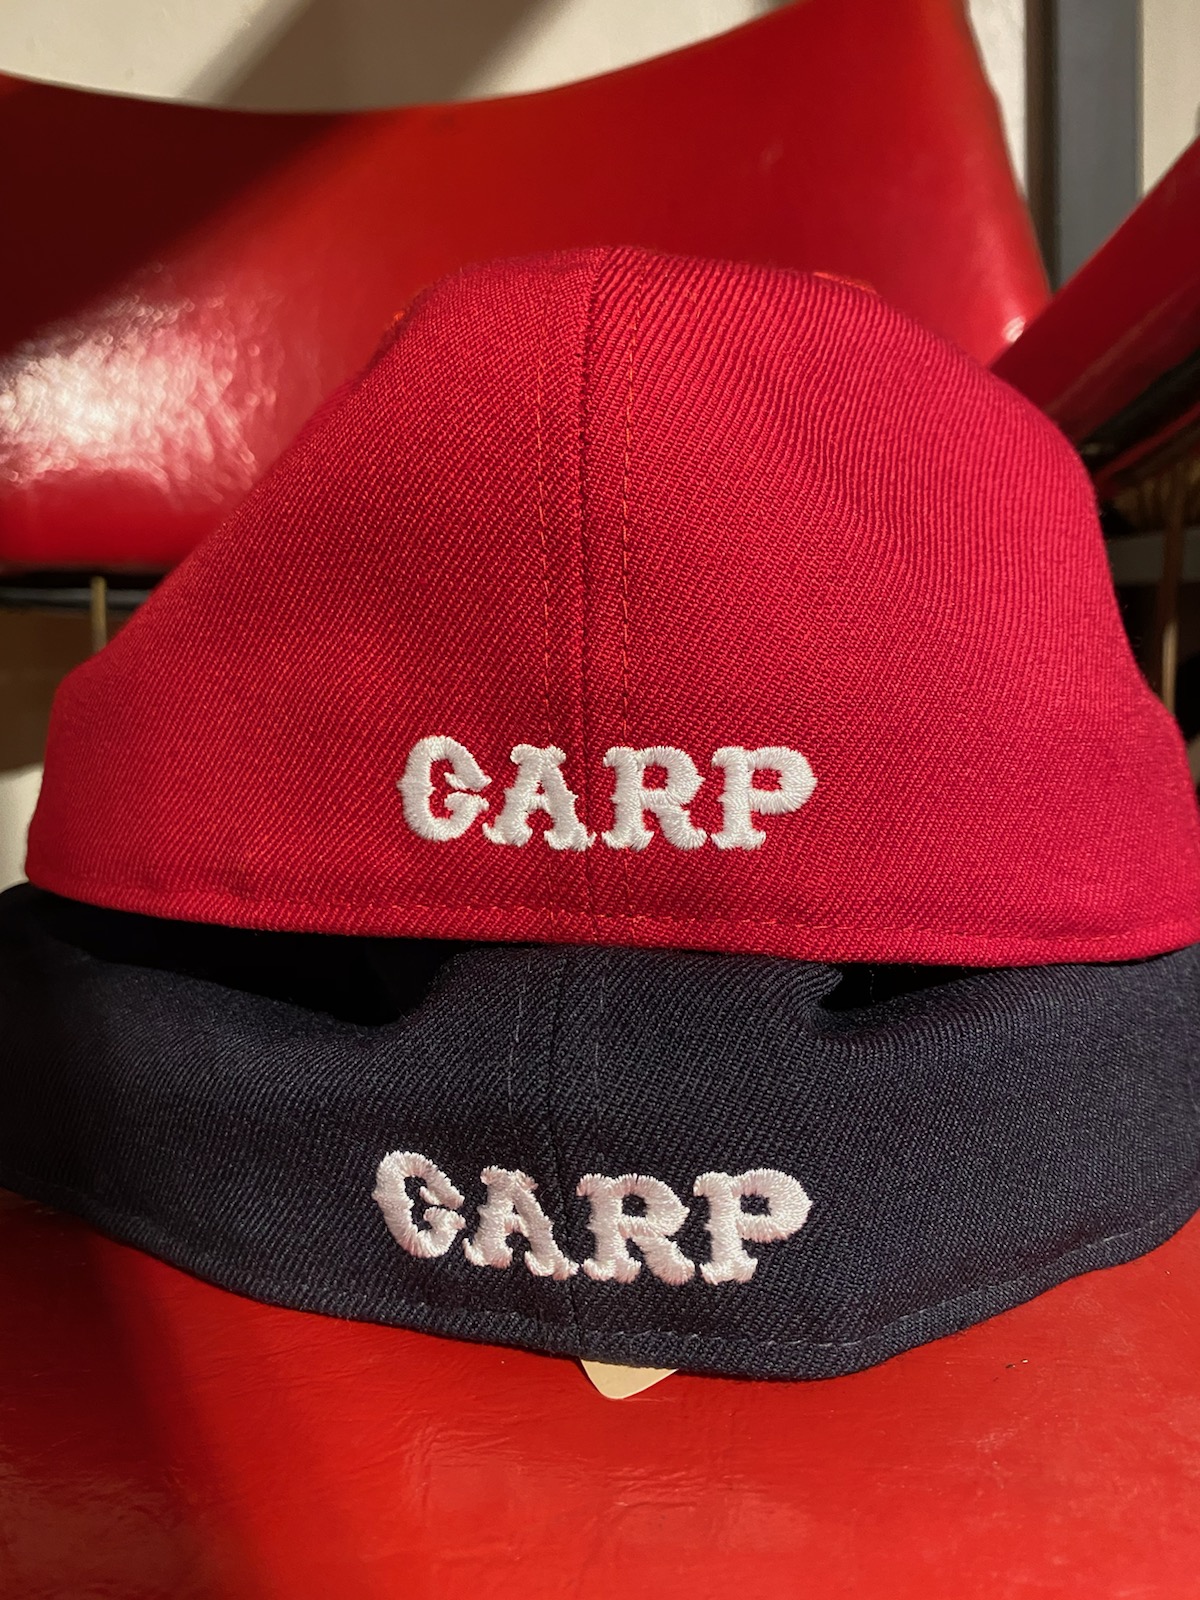 広島本通り帽子屋　NEWERA 広島　NEWERA×CARP×Shappo　コラボCAP　レオパード柄CAP